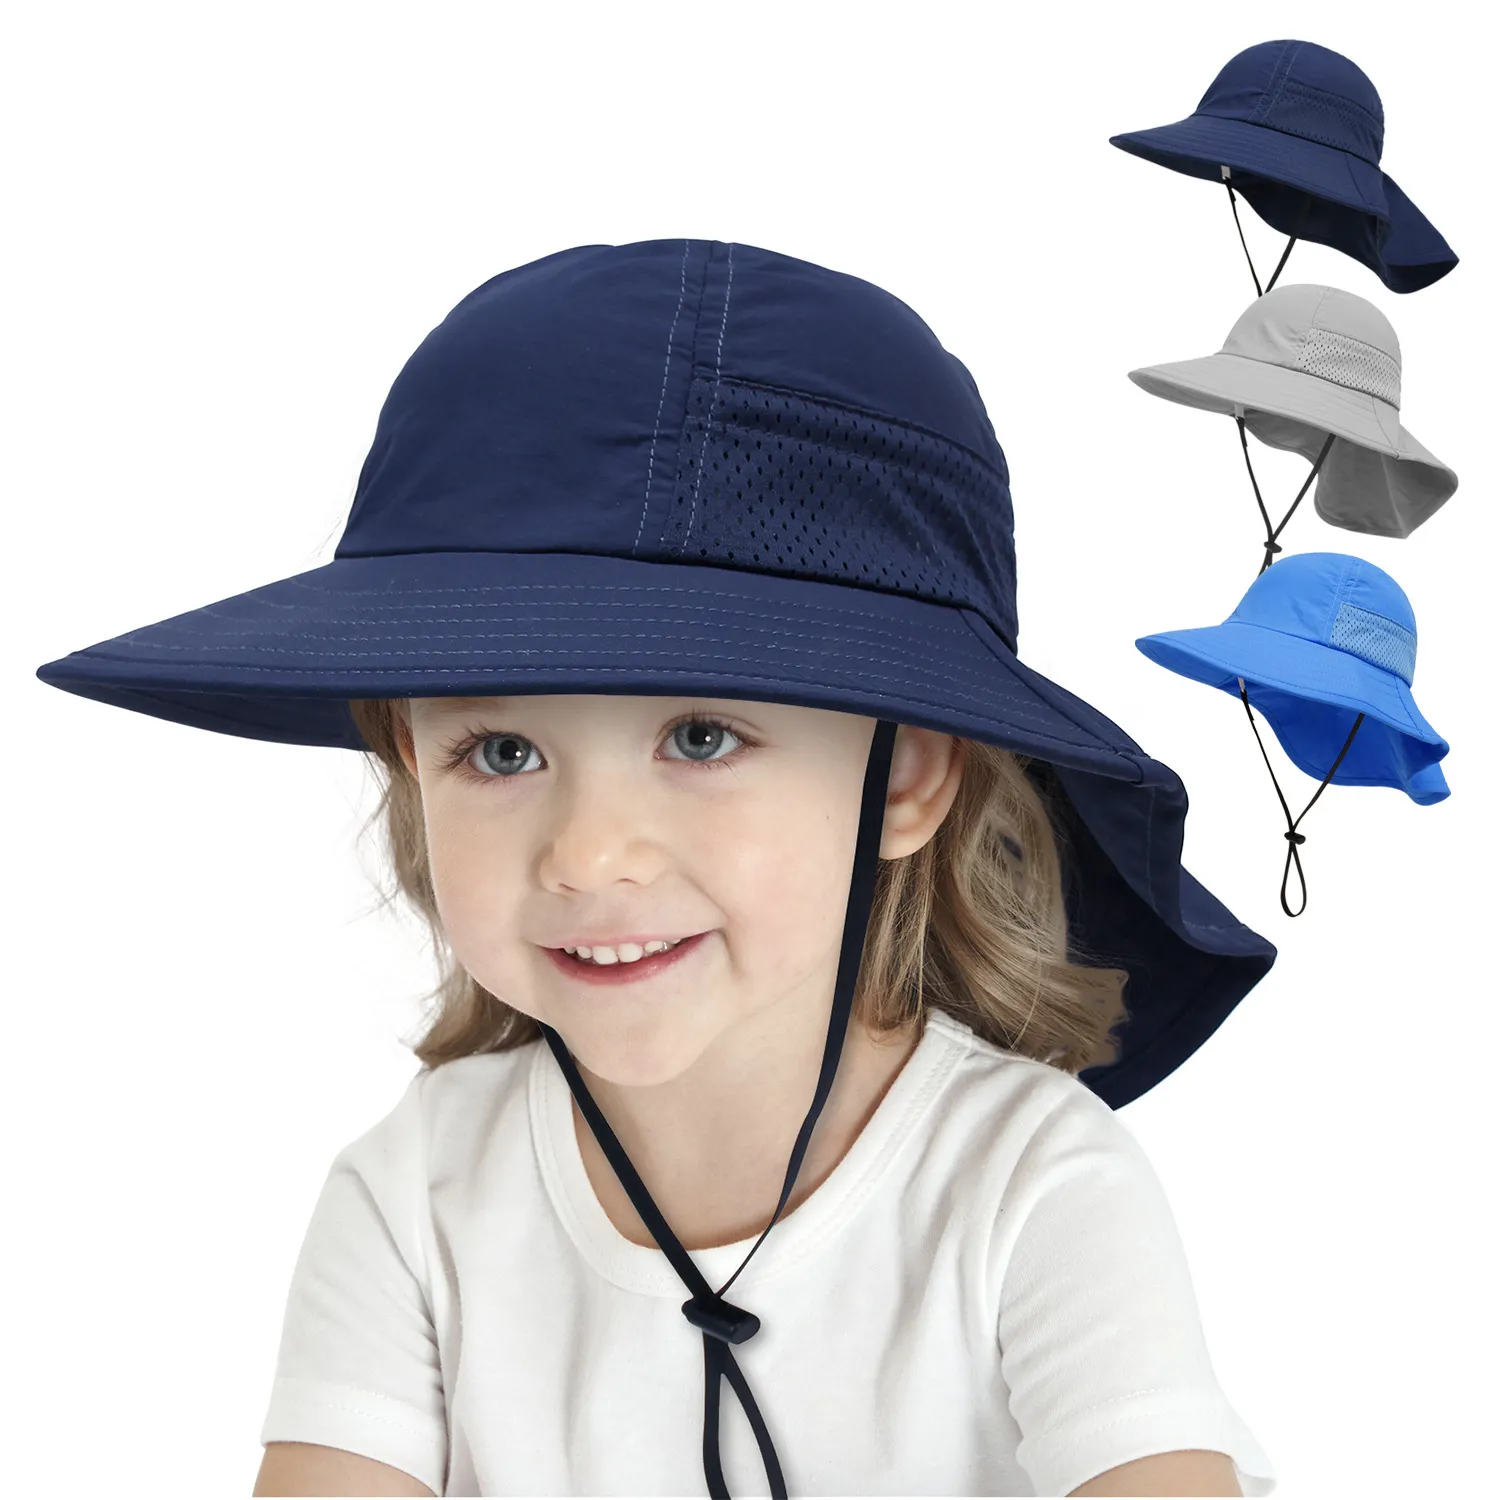 Bébé seau chapeau en plein air plage enfants protection solaire casquettes couleur Pure léger respirant maille enfants chapeaux avec Cape